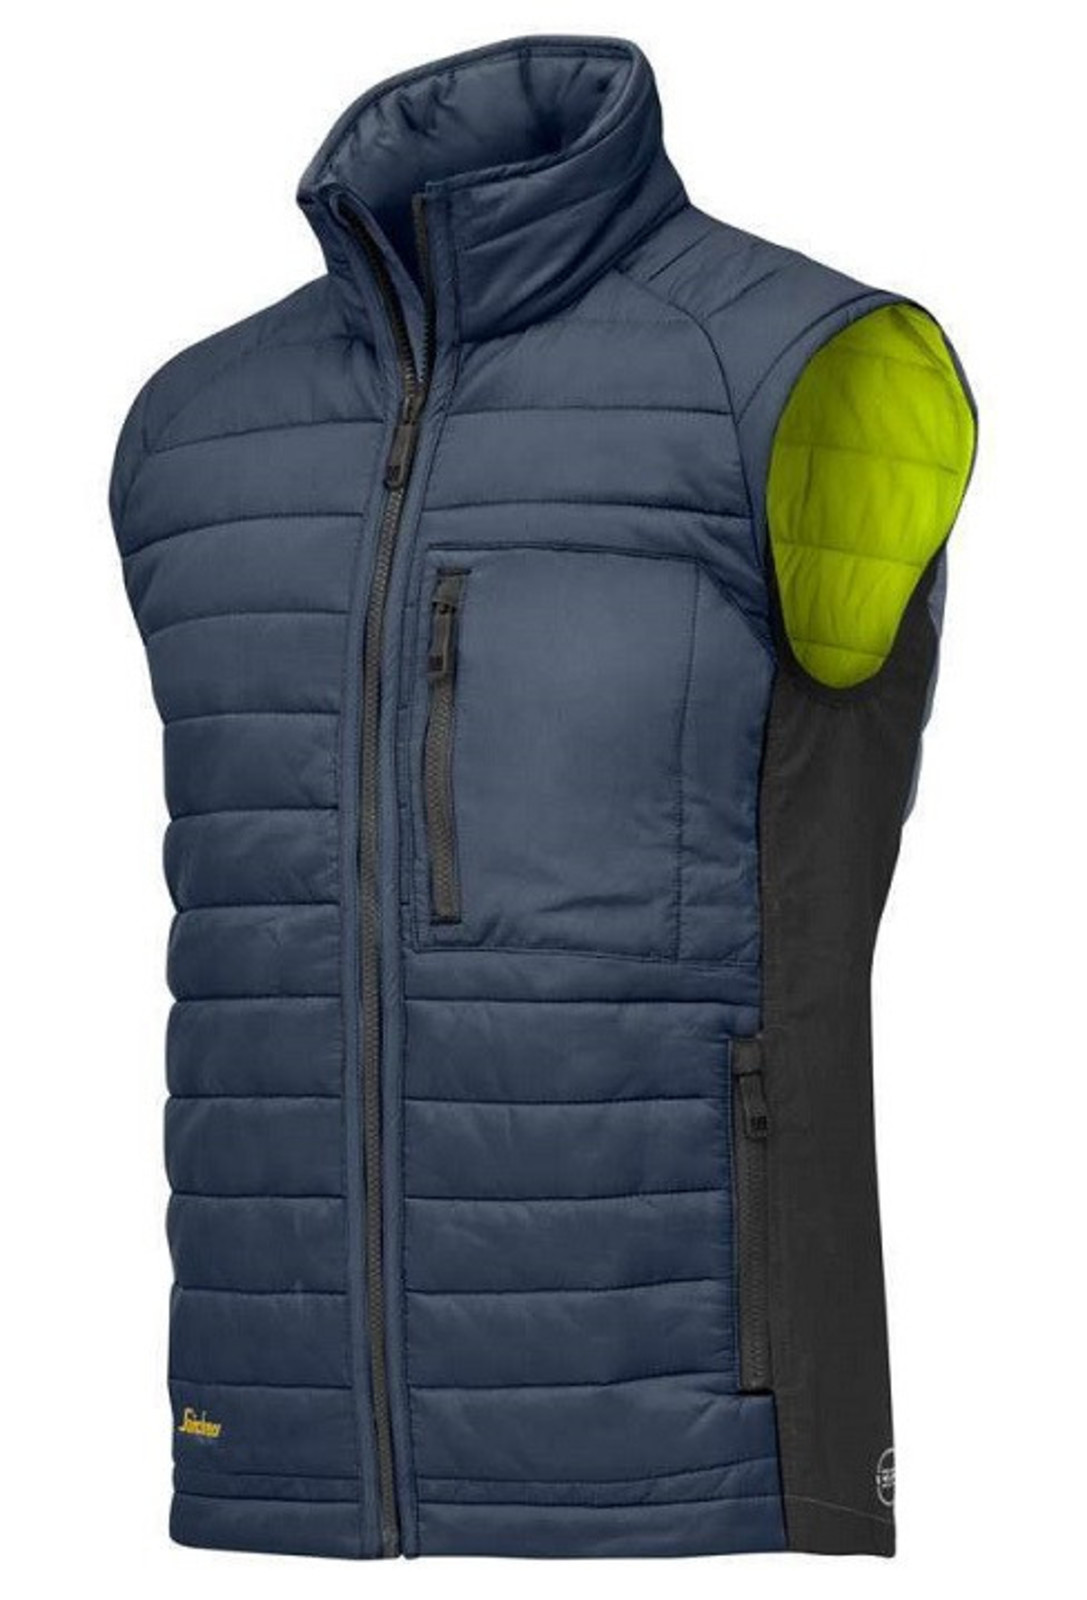 Prešívaná vesta Snickers® AllroundWork 37.5® - veľkosť: M, farba: modrá